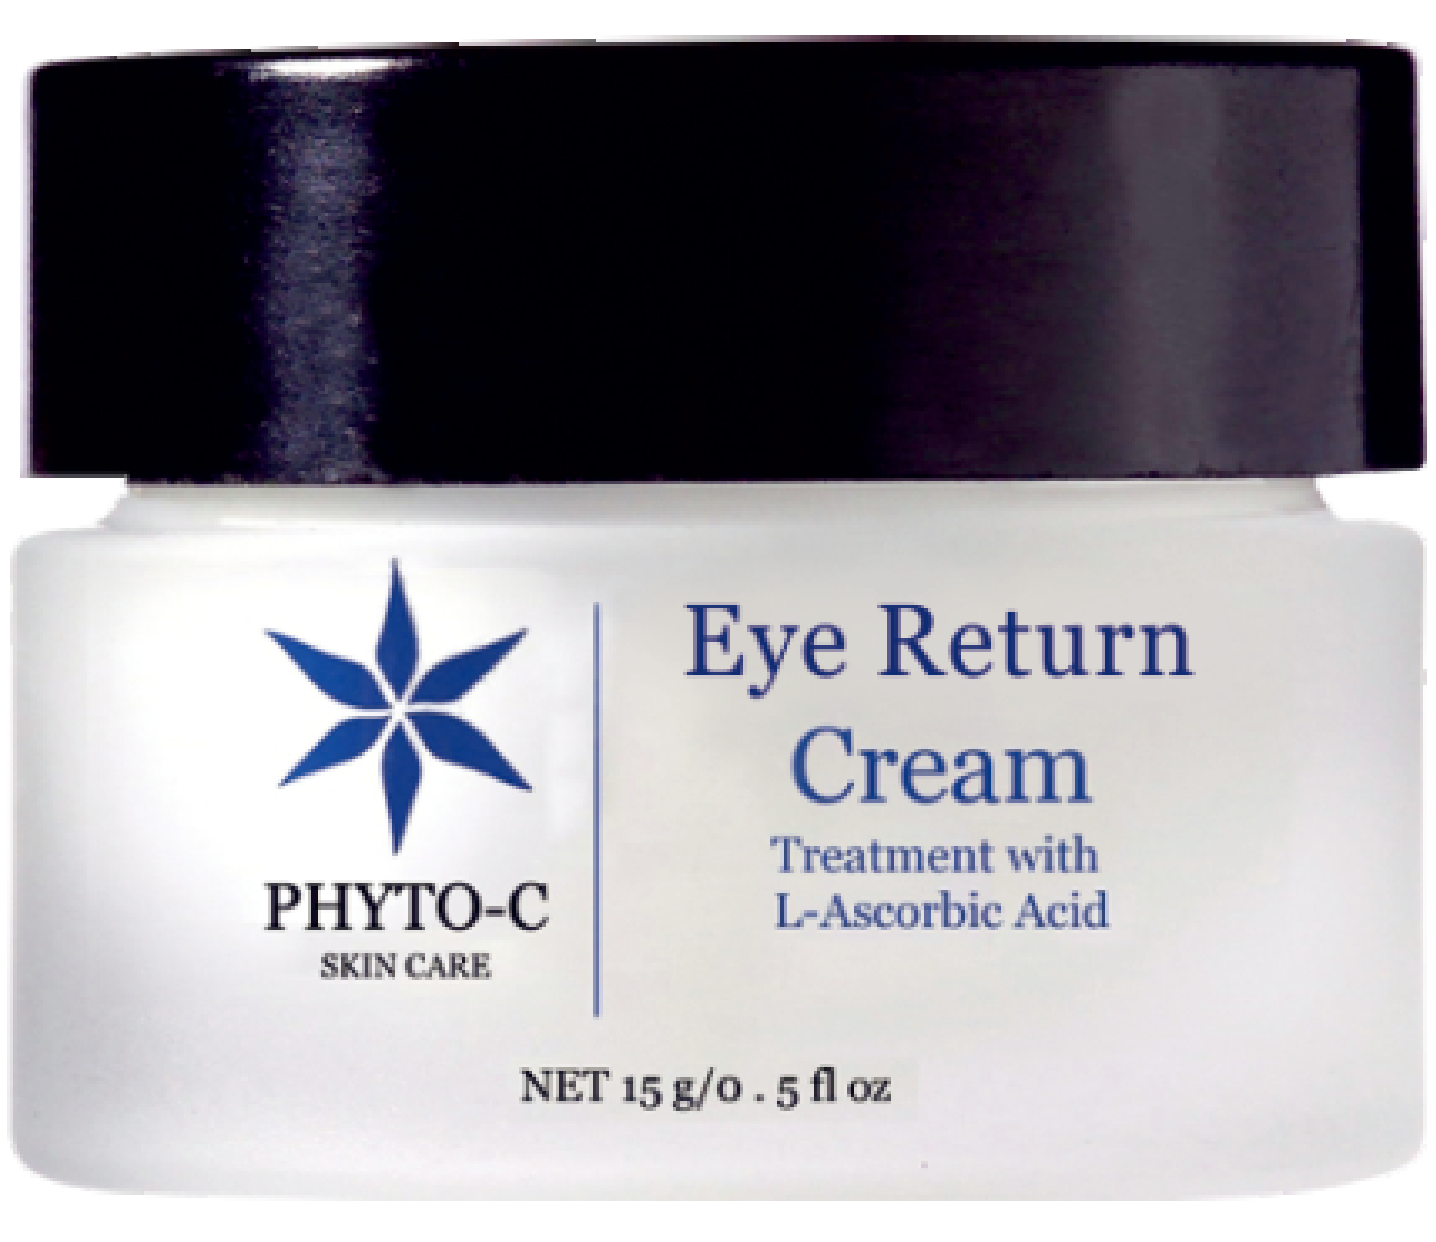 PHYTO-C 淡化眼圈抗氧眼霜 Eye Return Cream